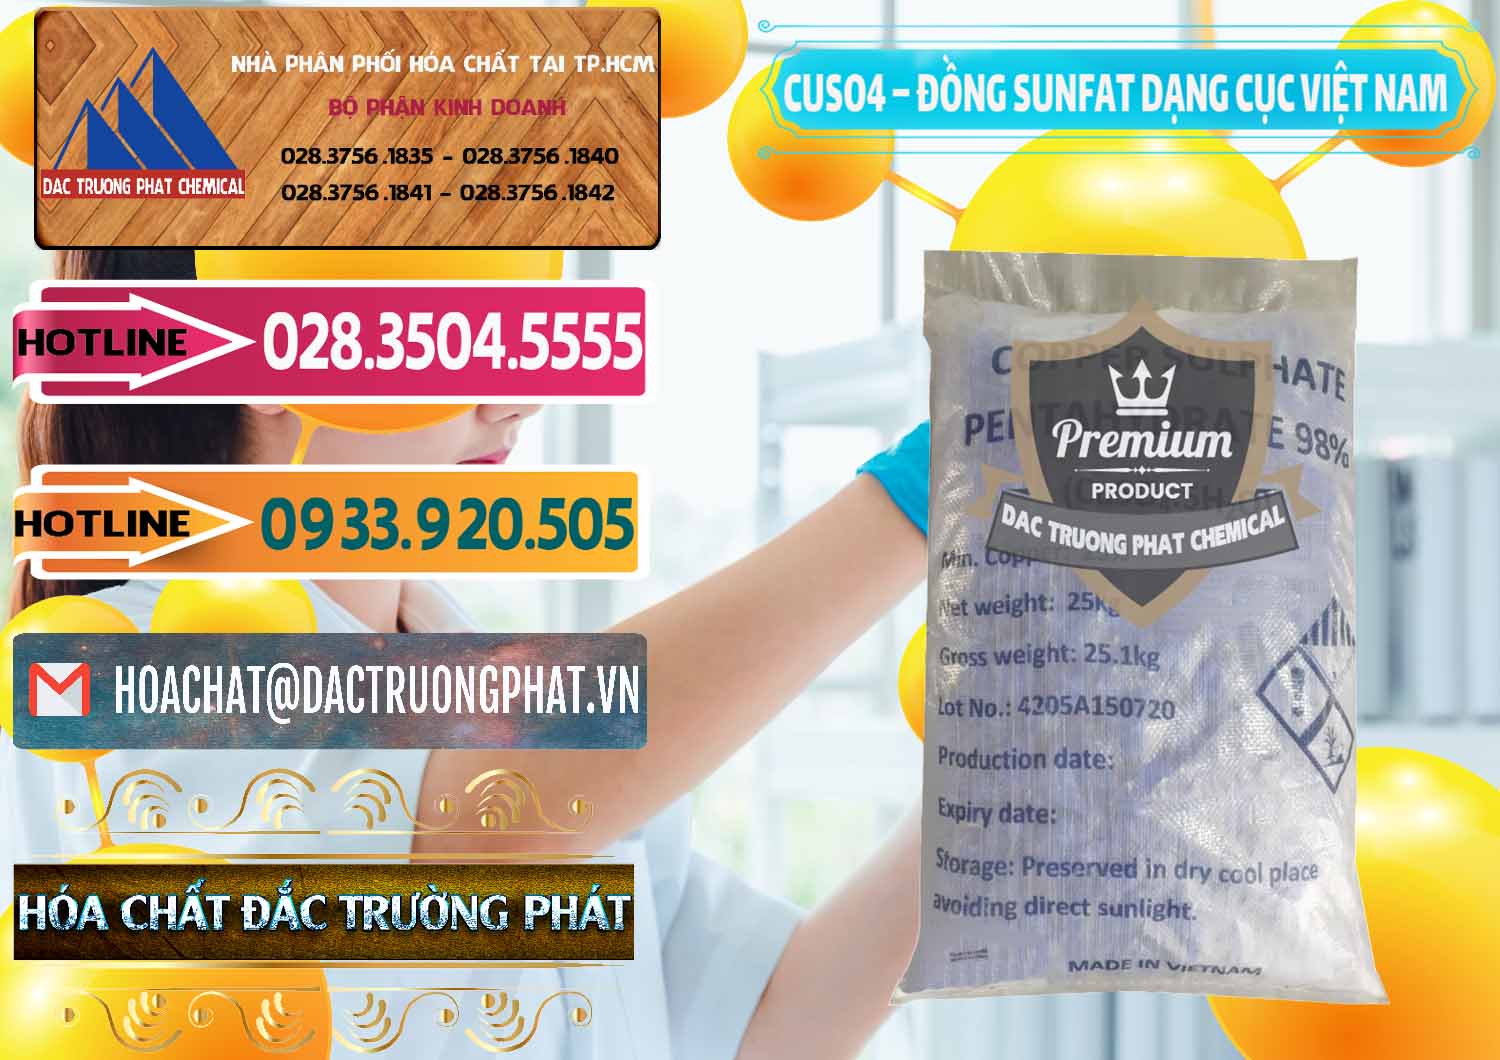 Chuyên cung cấp và bán CUSO4 – Đồng Sunfat Dạng Cục Việt Nam - 0303 - Cung cấp và phân phối hóa chất tại TP.HCM - dactruongphat.vn